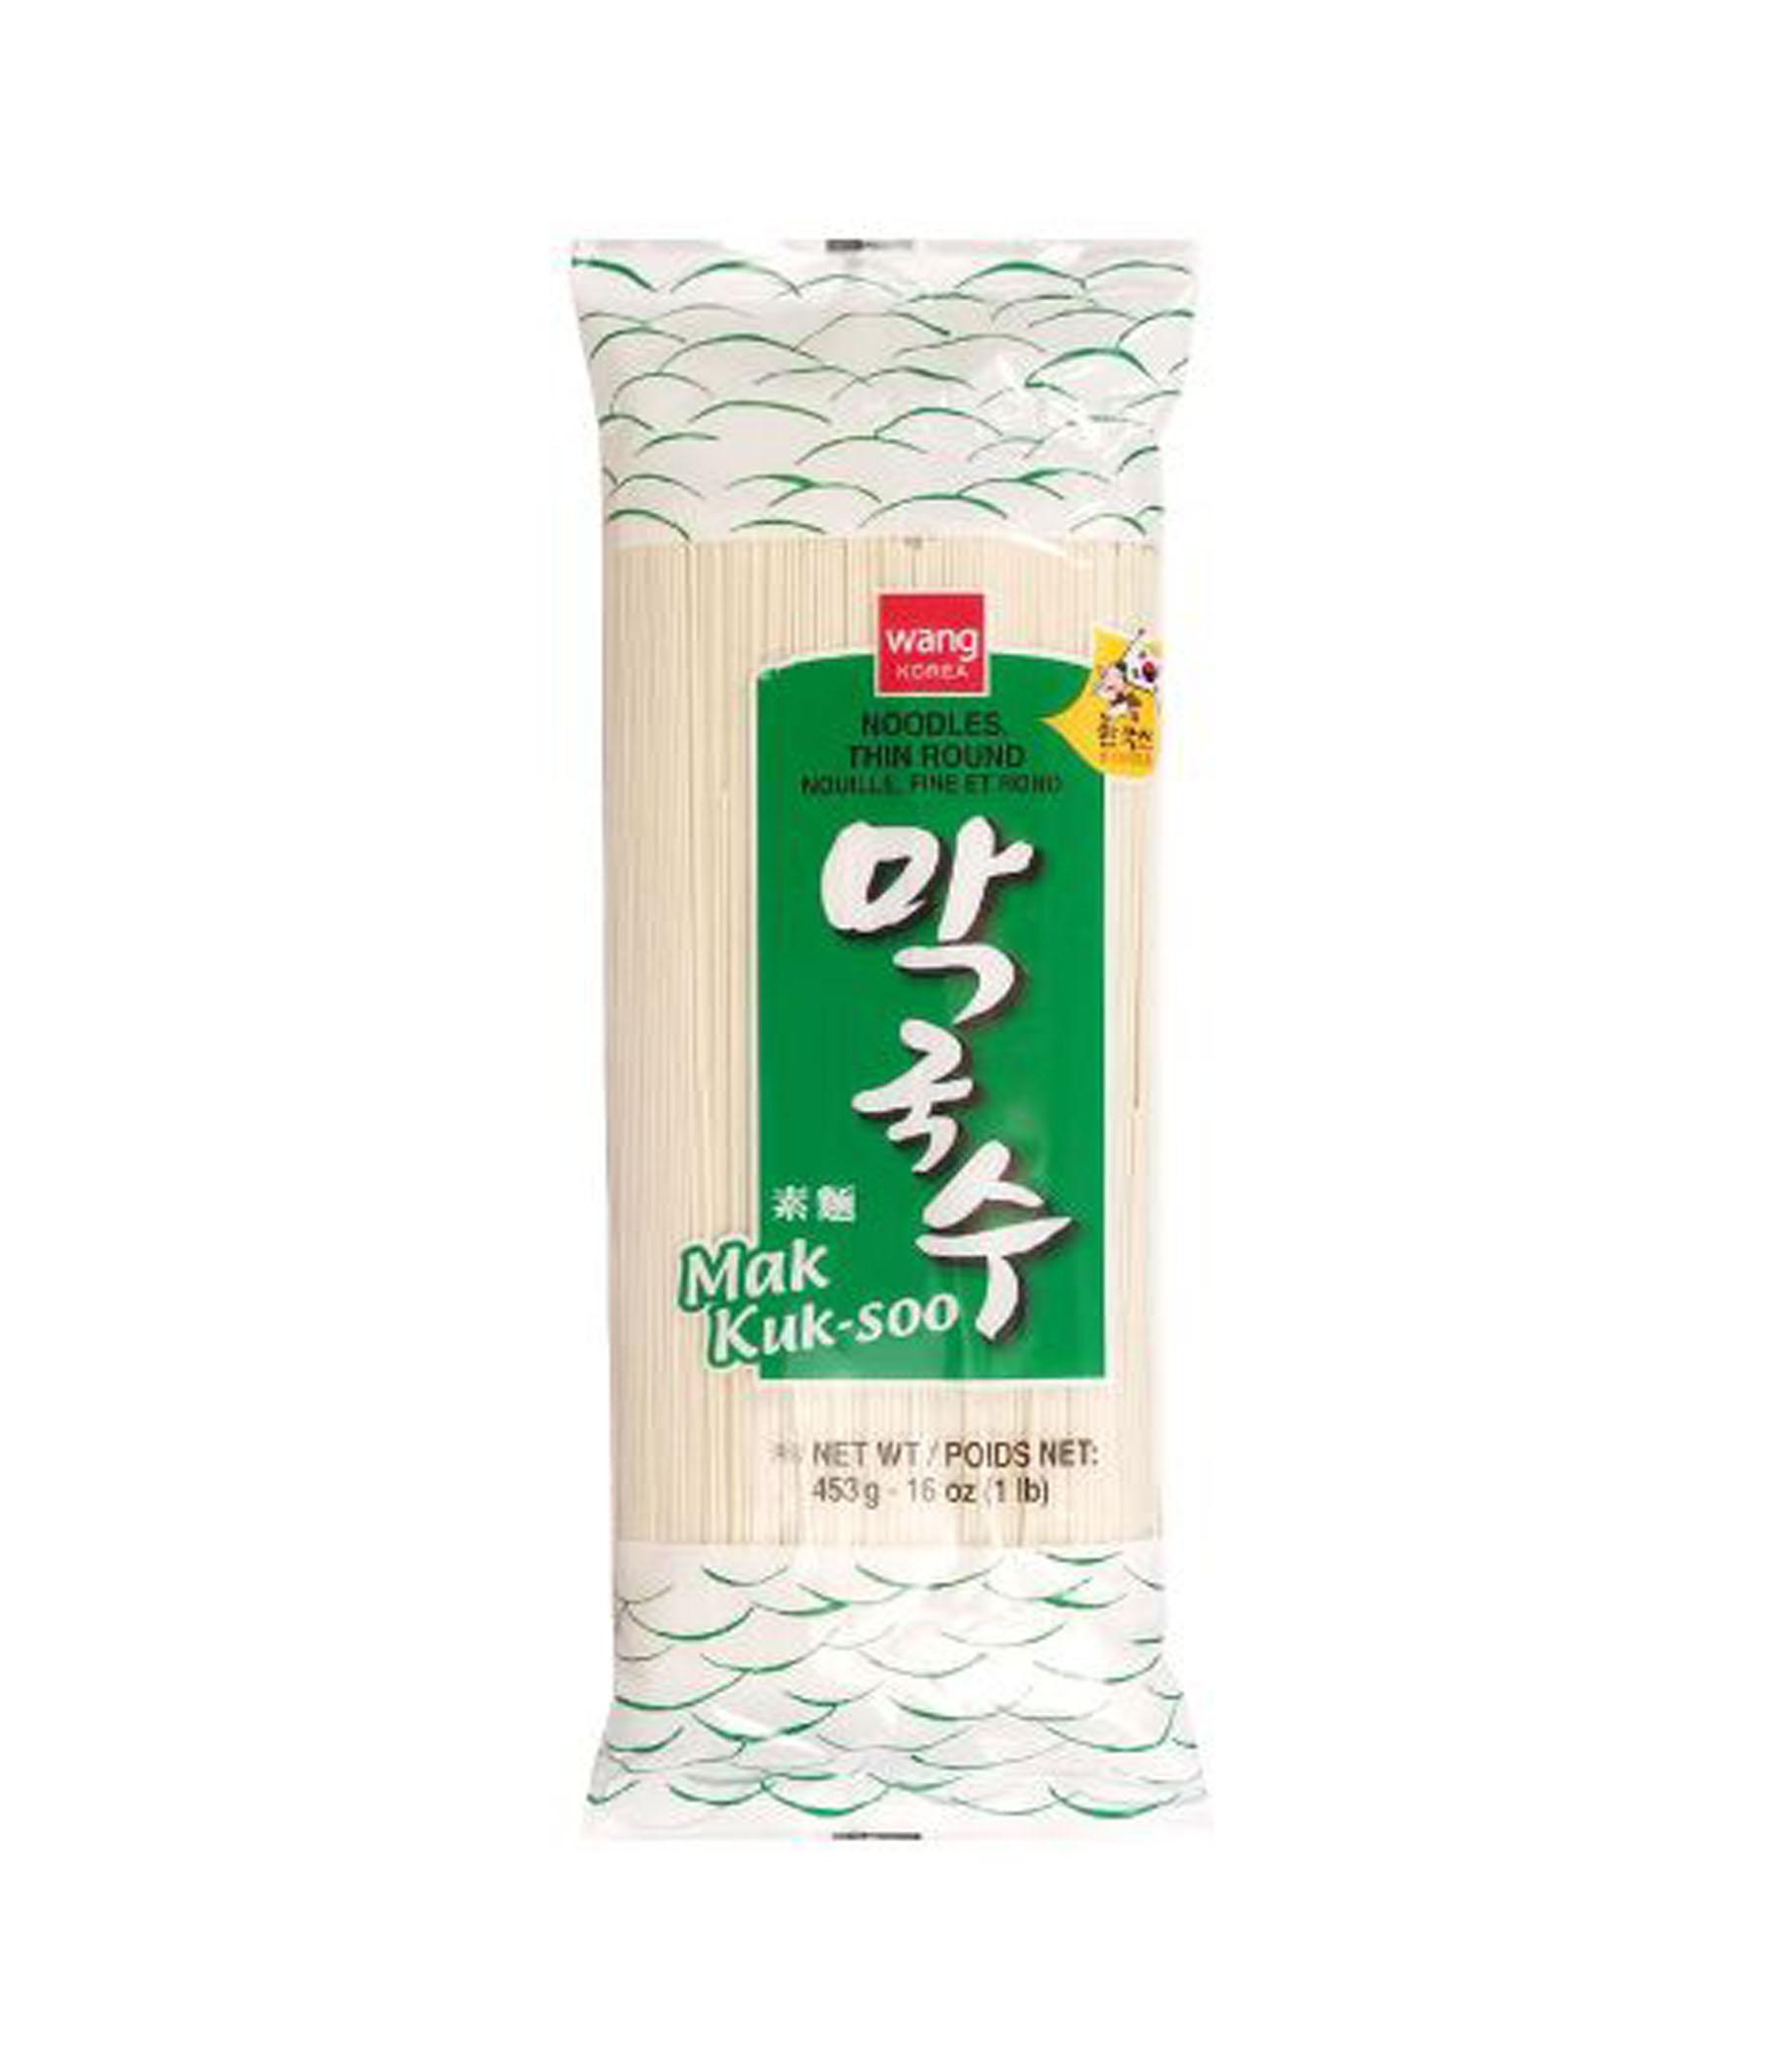 wong-korea-noodles-thin-round